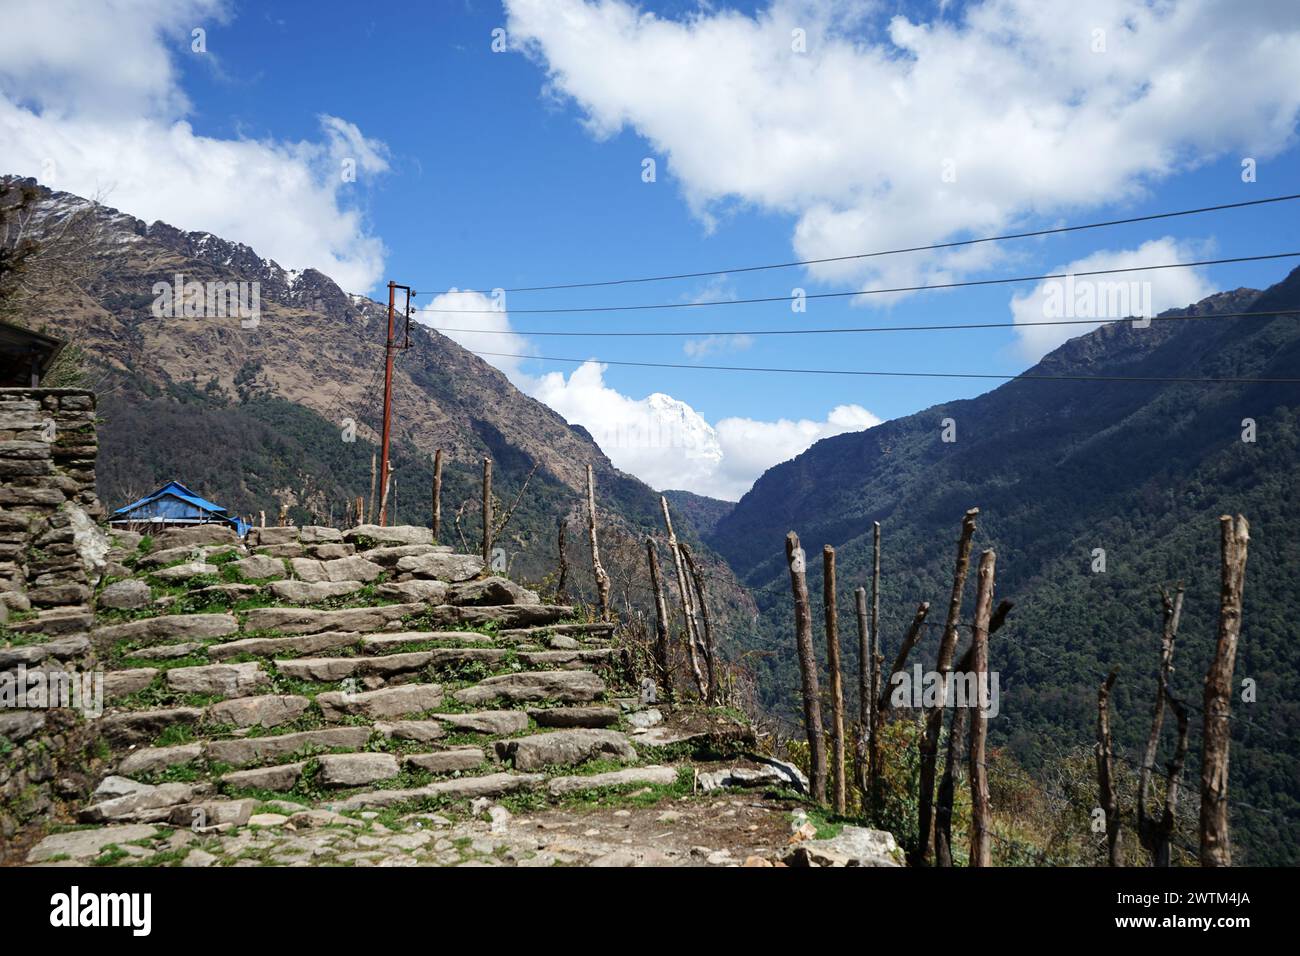 Paysage naturel du village népalais tribal parmi la chaîne de montagnes vertes le long de trekking à Annapurna Himalayan Range- Népal Banque D'Images